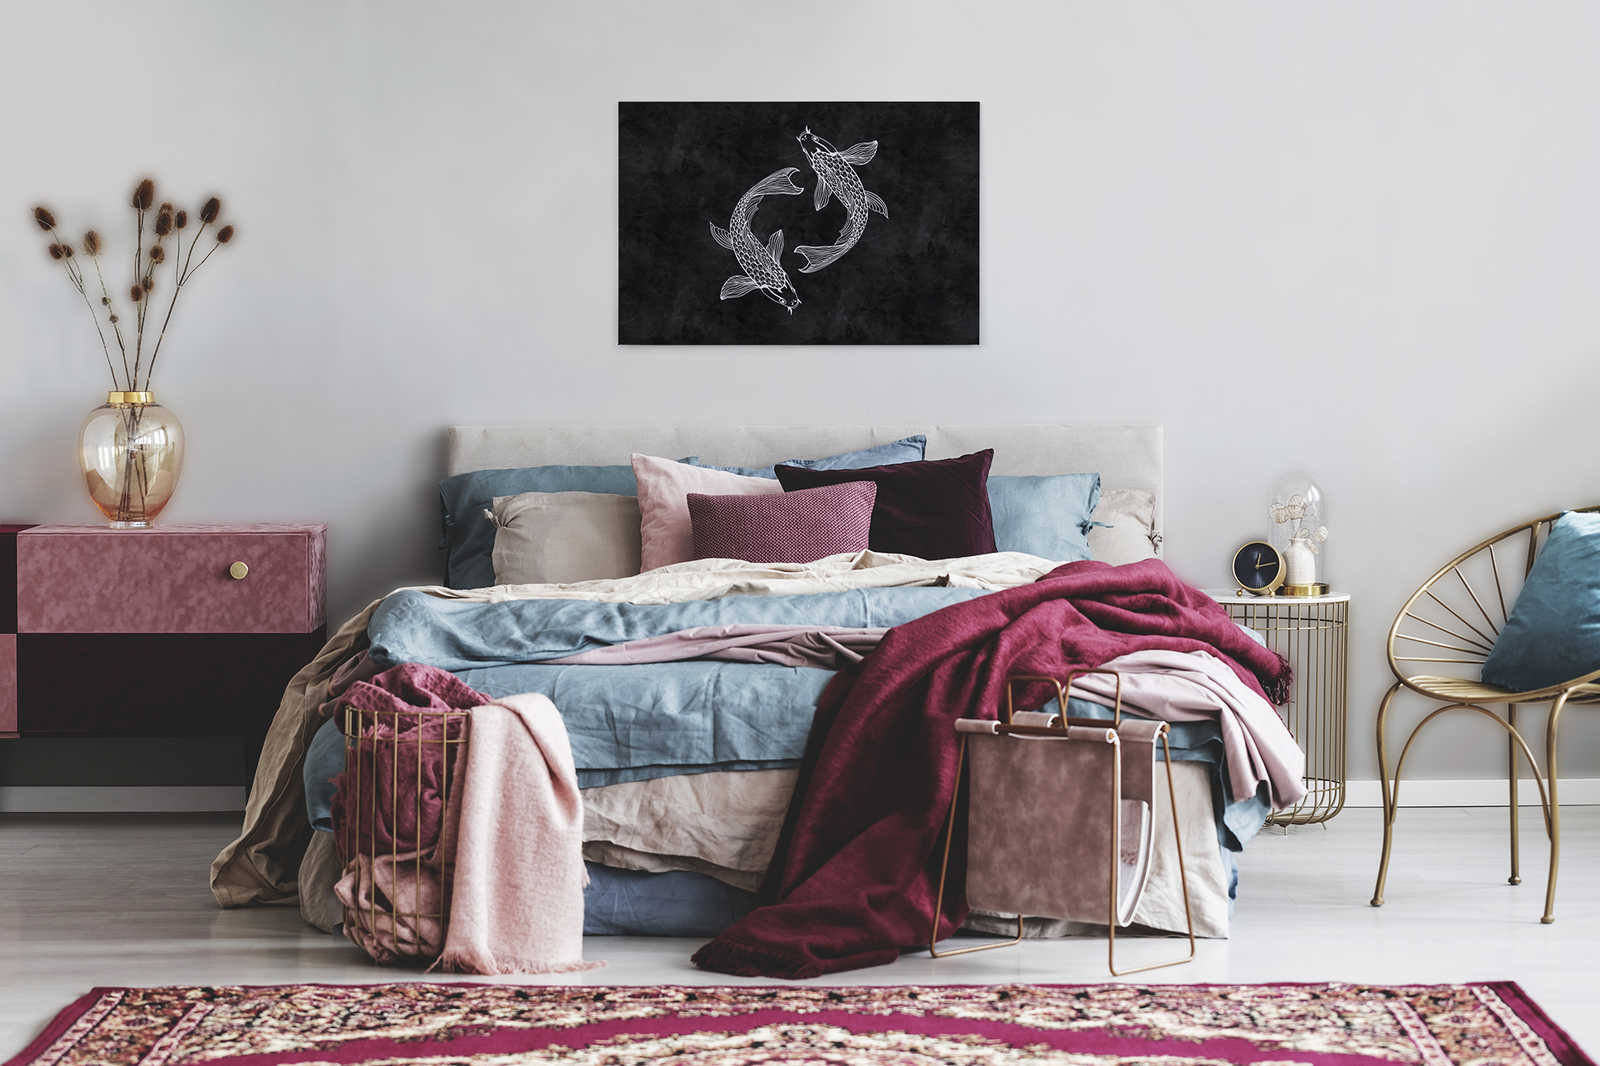             Koi Leinwandbild Schwarz-Weiß im Kreidetafel-Look – 0,90 m x 0,60 m
        